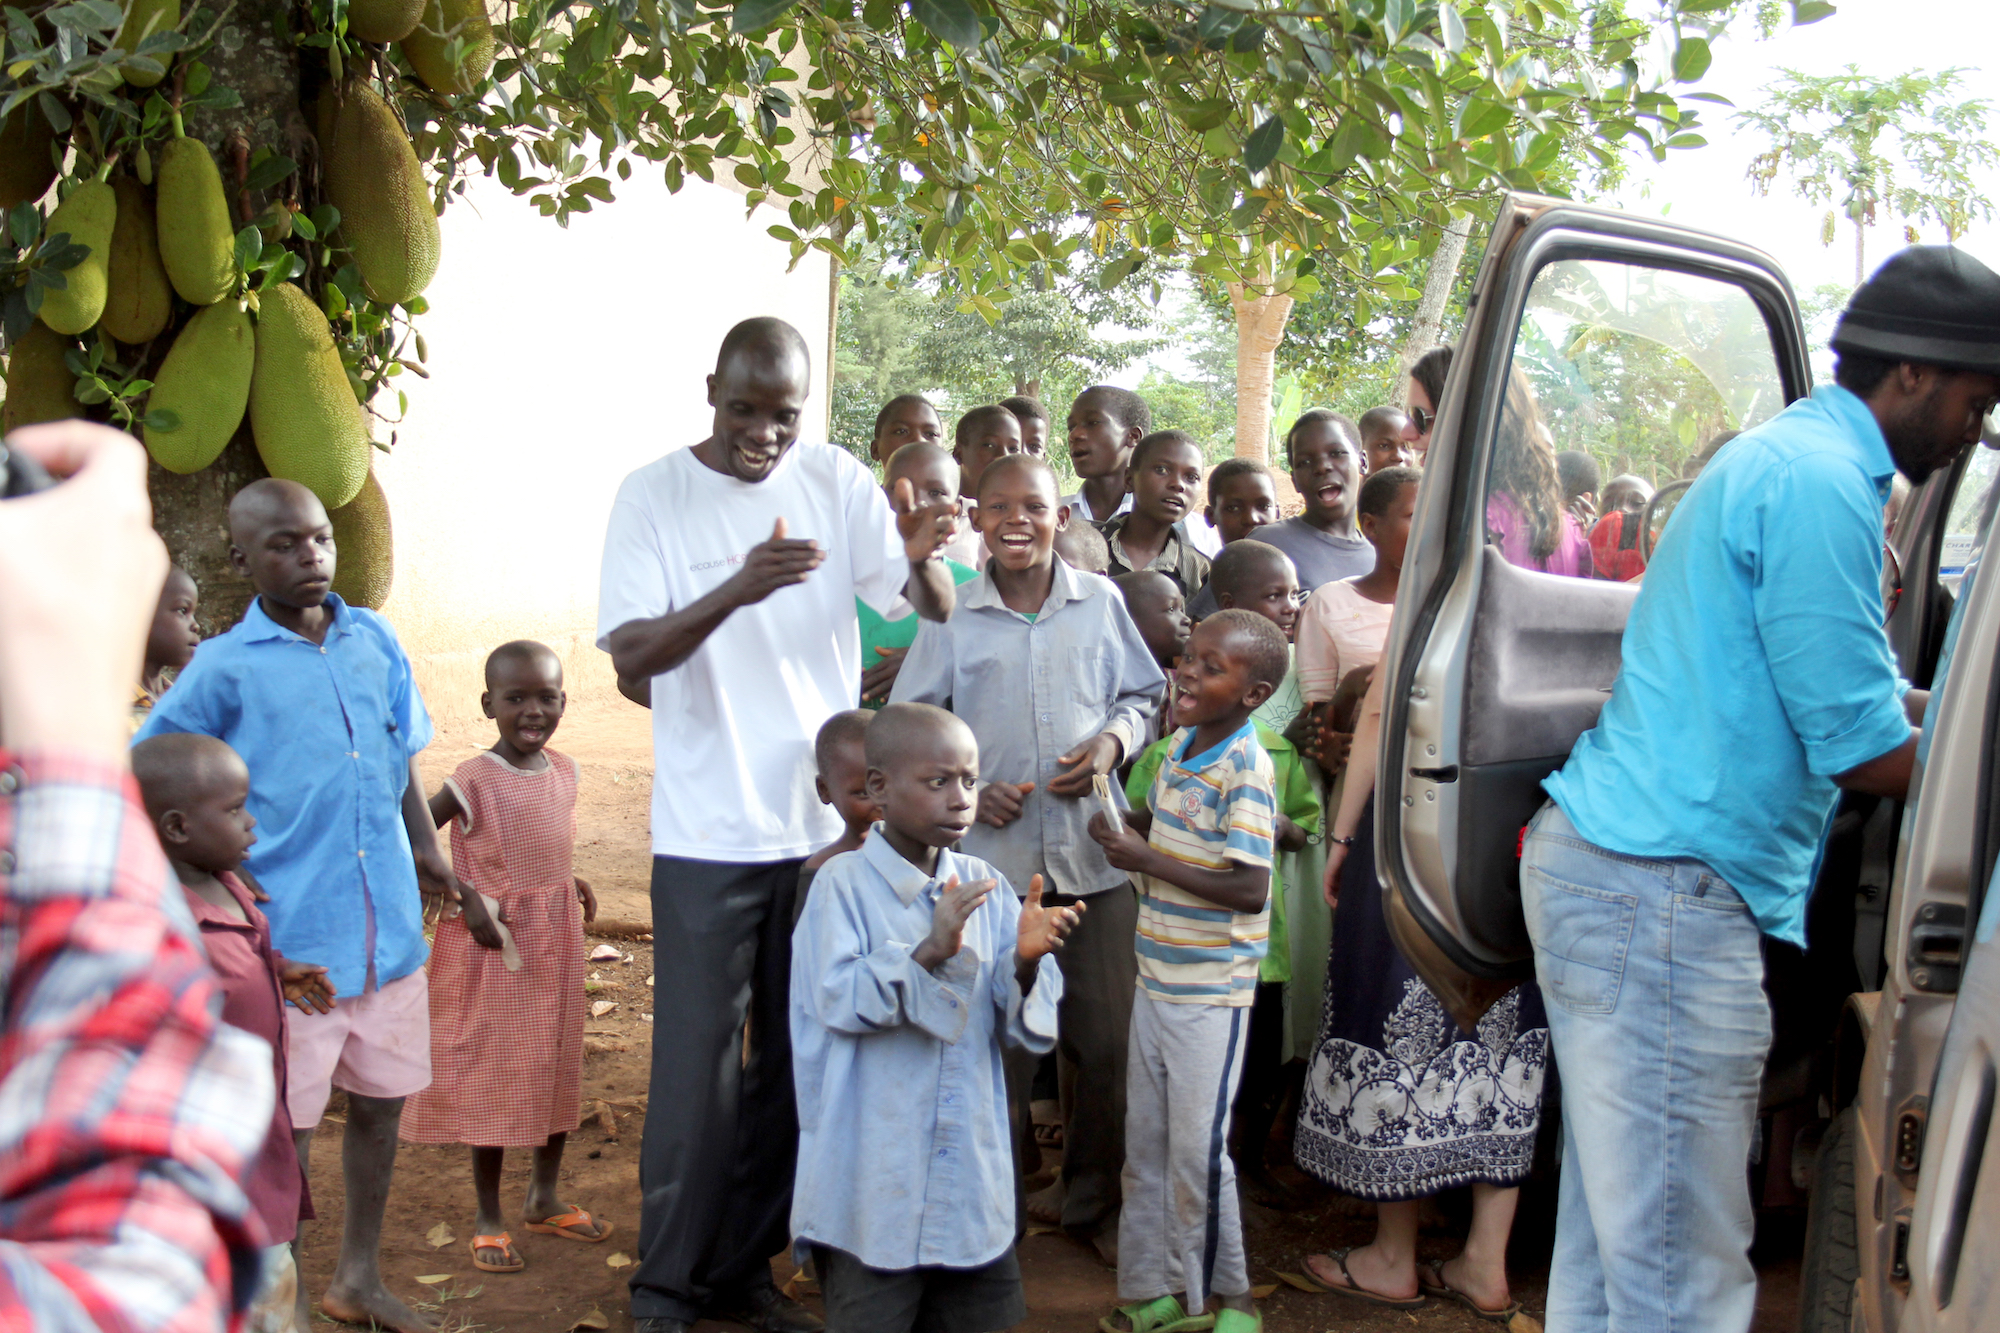 A group of children & men standing around an open car door